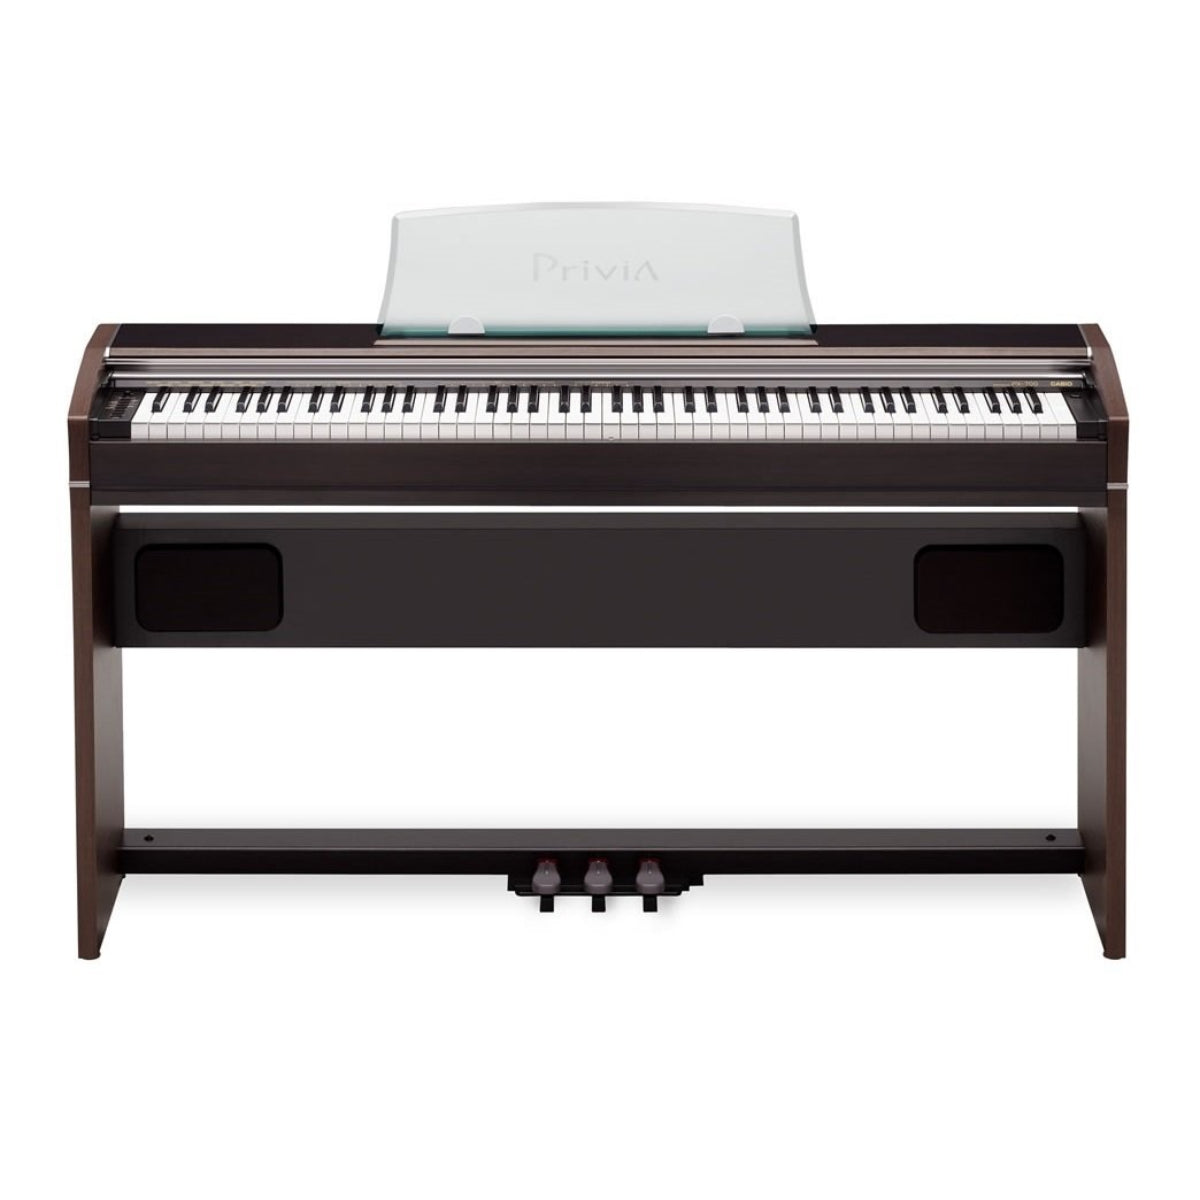 Đàn Piano Điện Casio PX-700 - Qua Sử Dụng